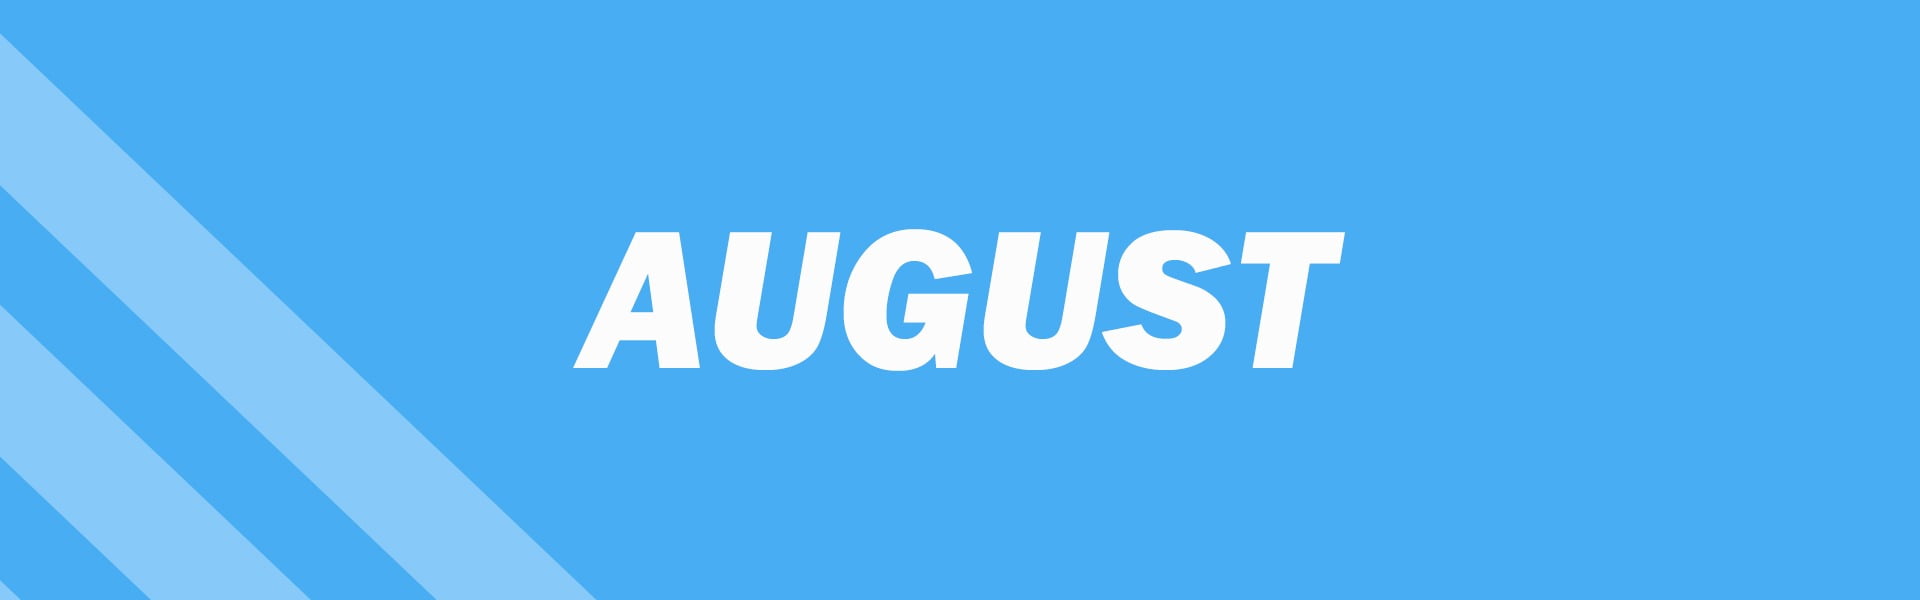 august_declaration-banner